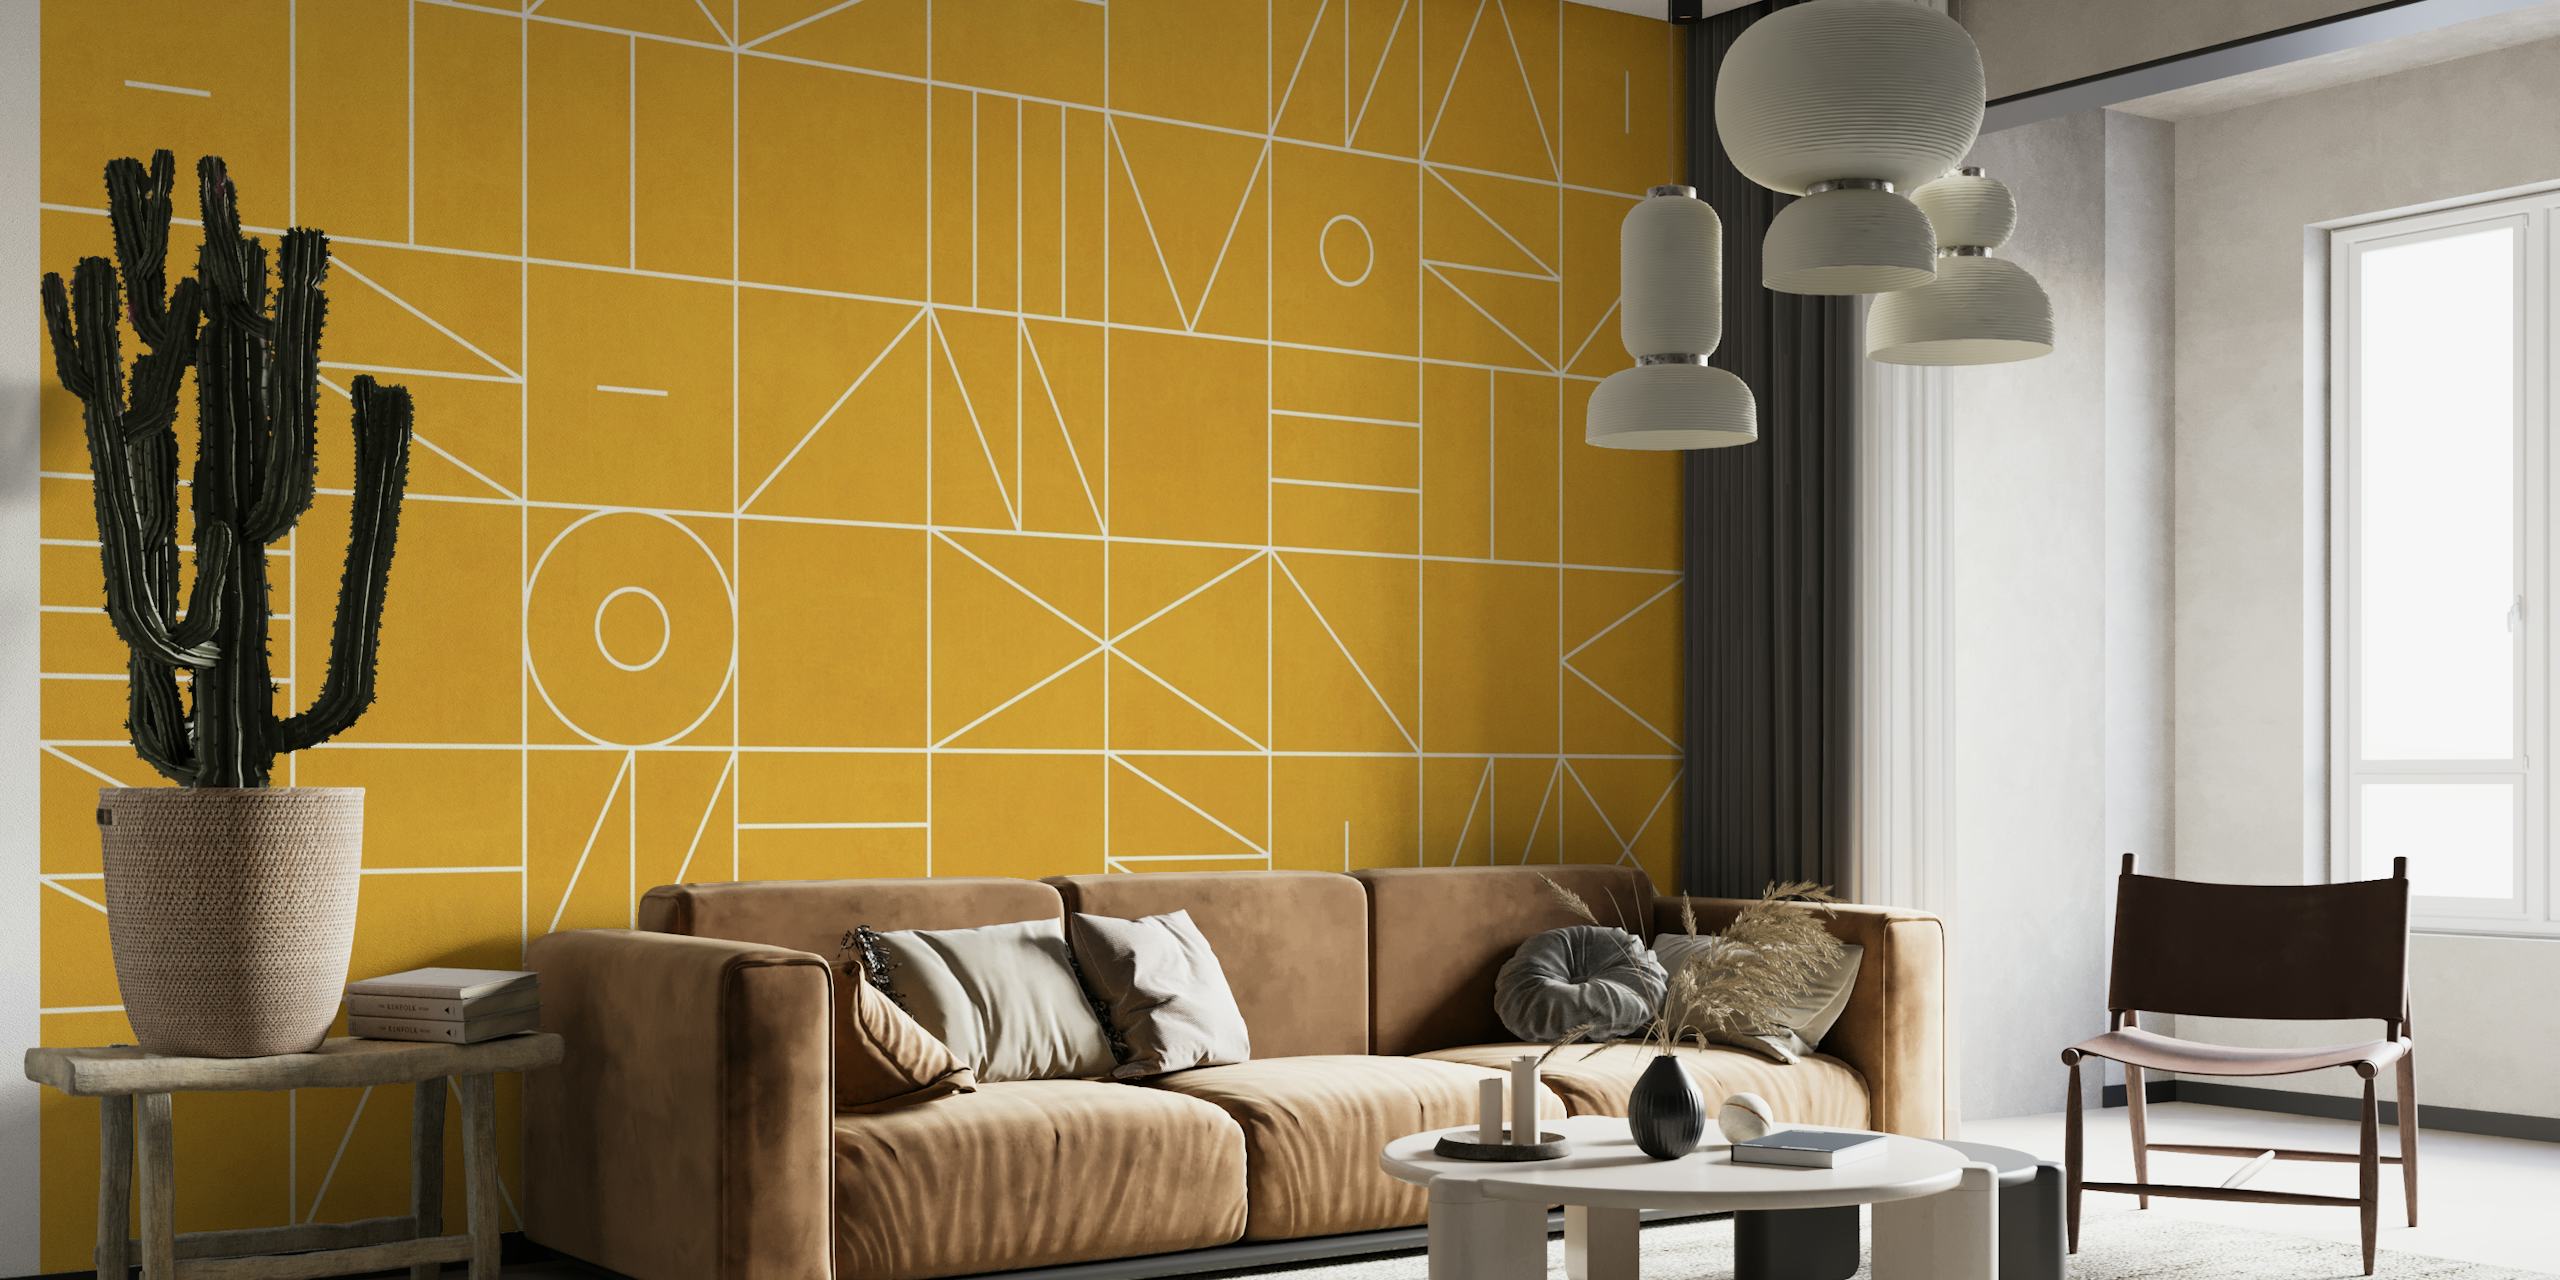 Muurschildering met geometrisch patroon in gouden tint met abstracte vormen en lijnen